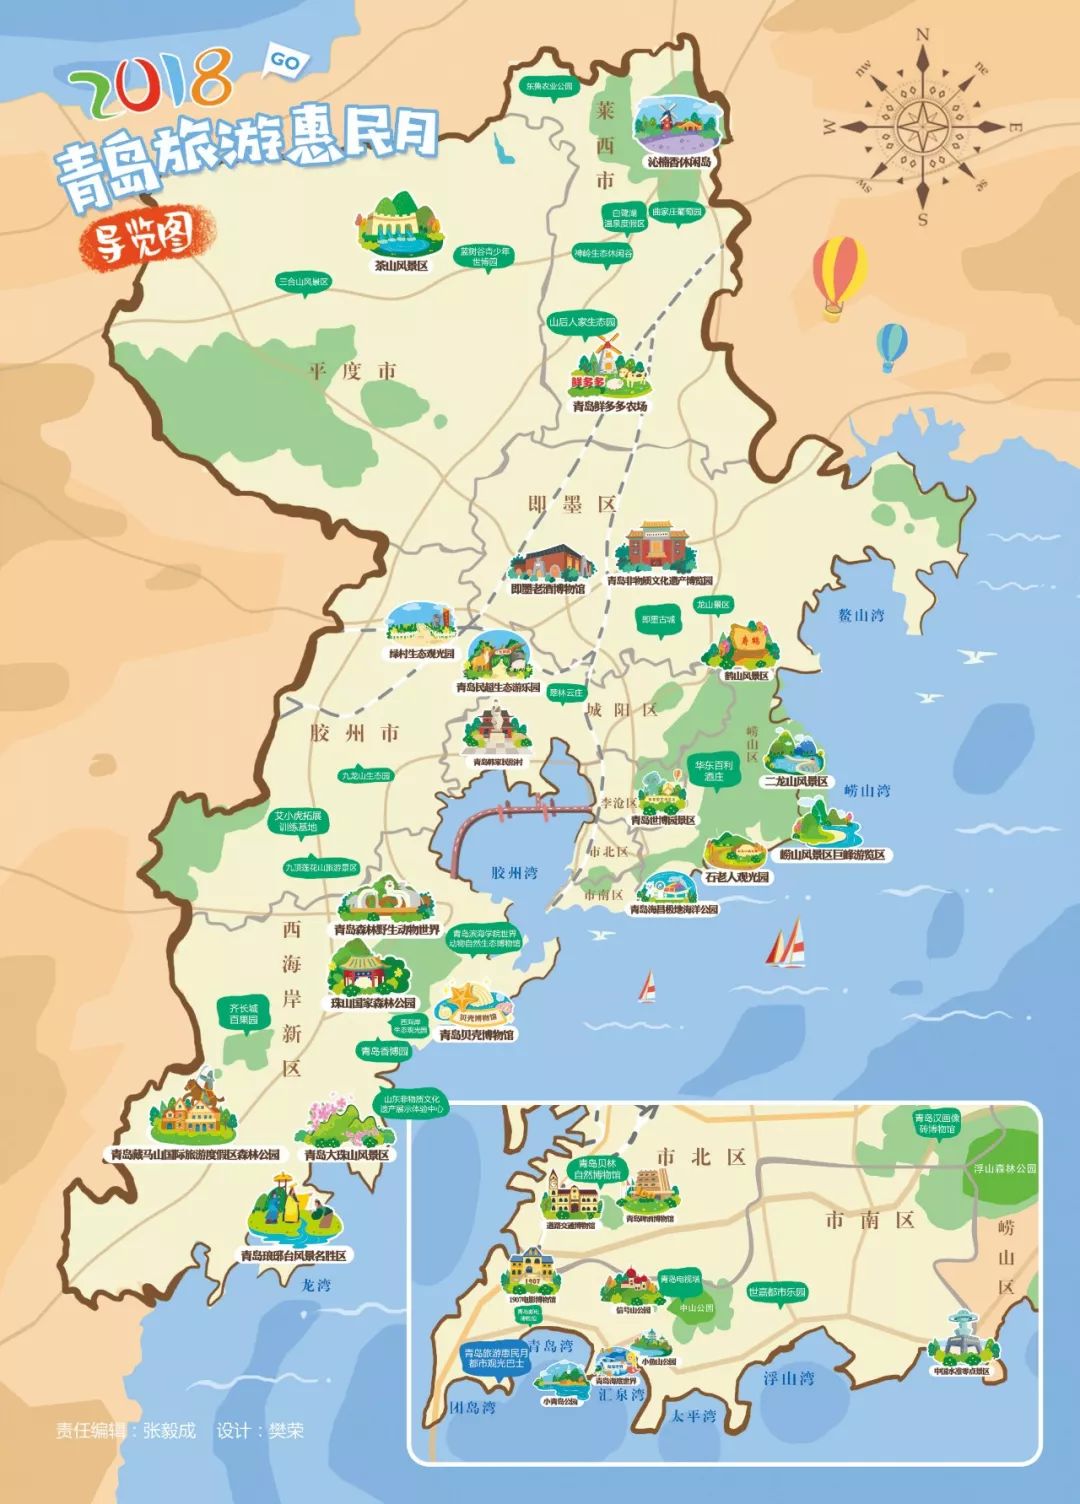 这份手绘地图和最全惠民景区信息,带你开启2018青岛旅游惠民月之旅!